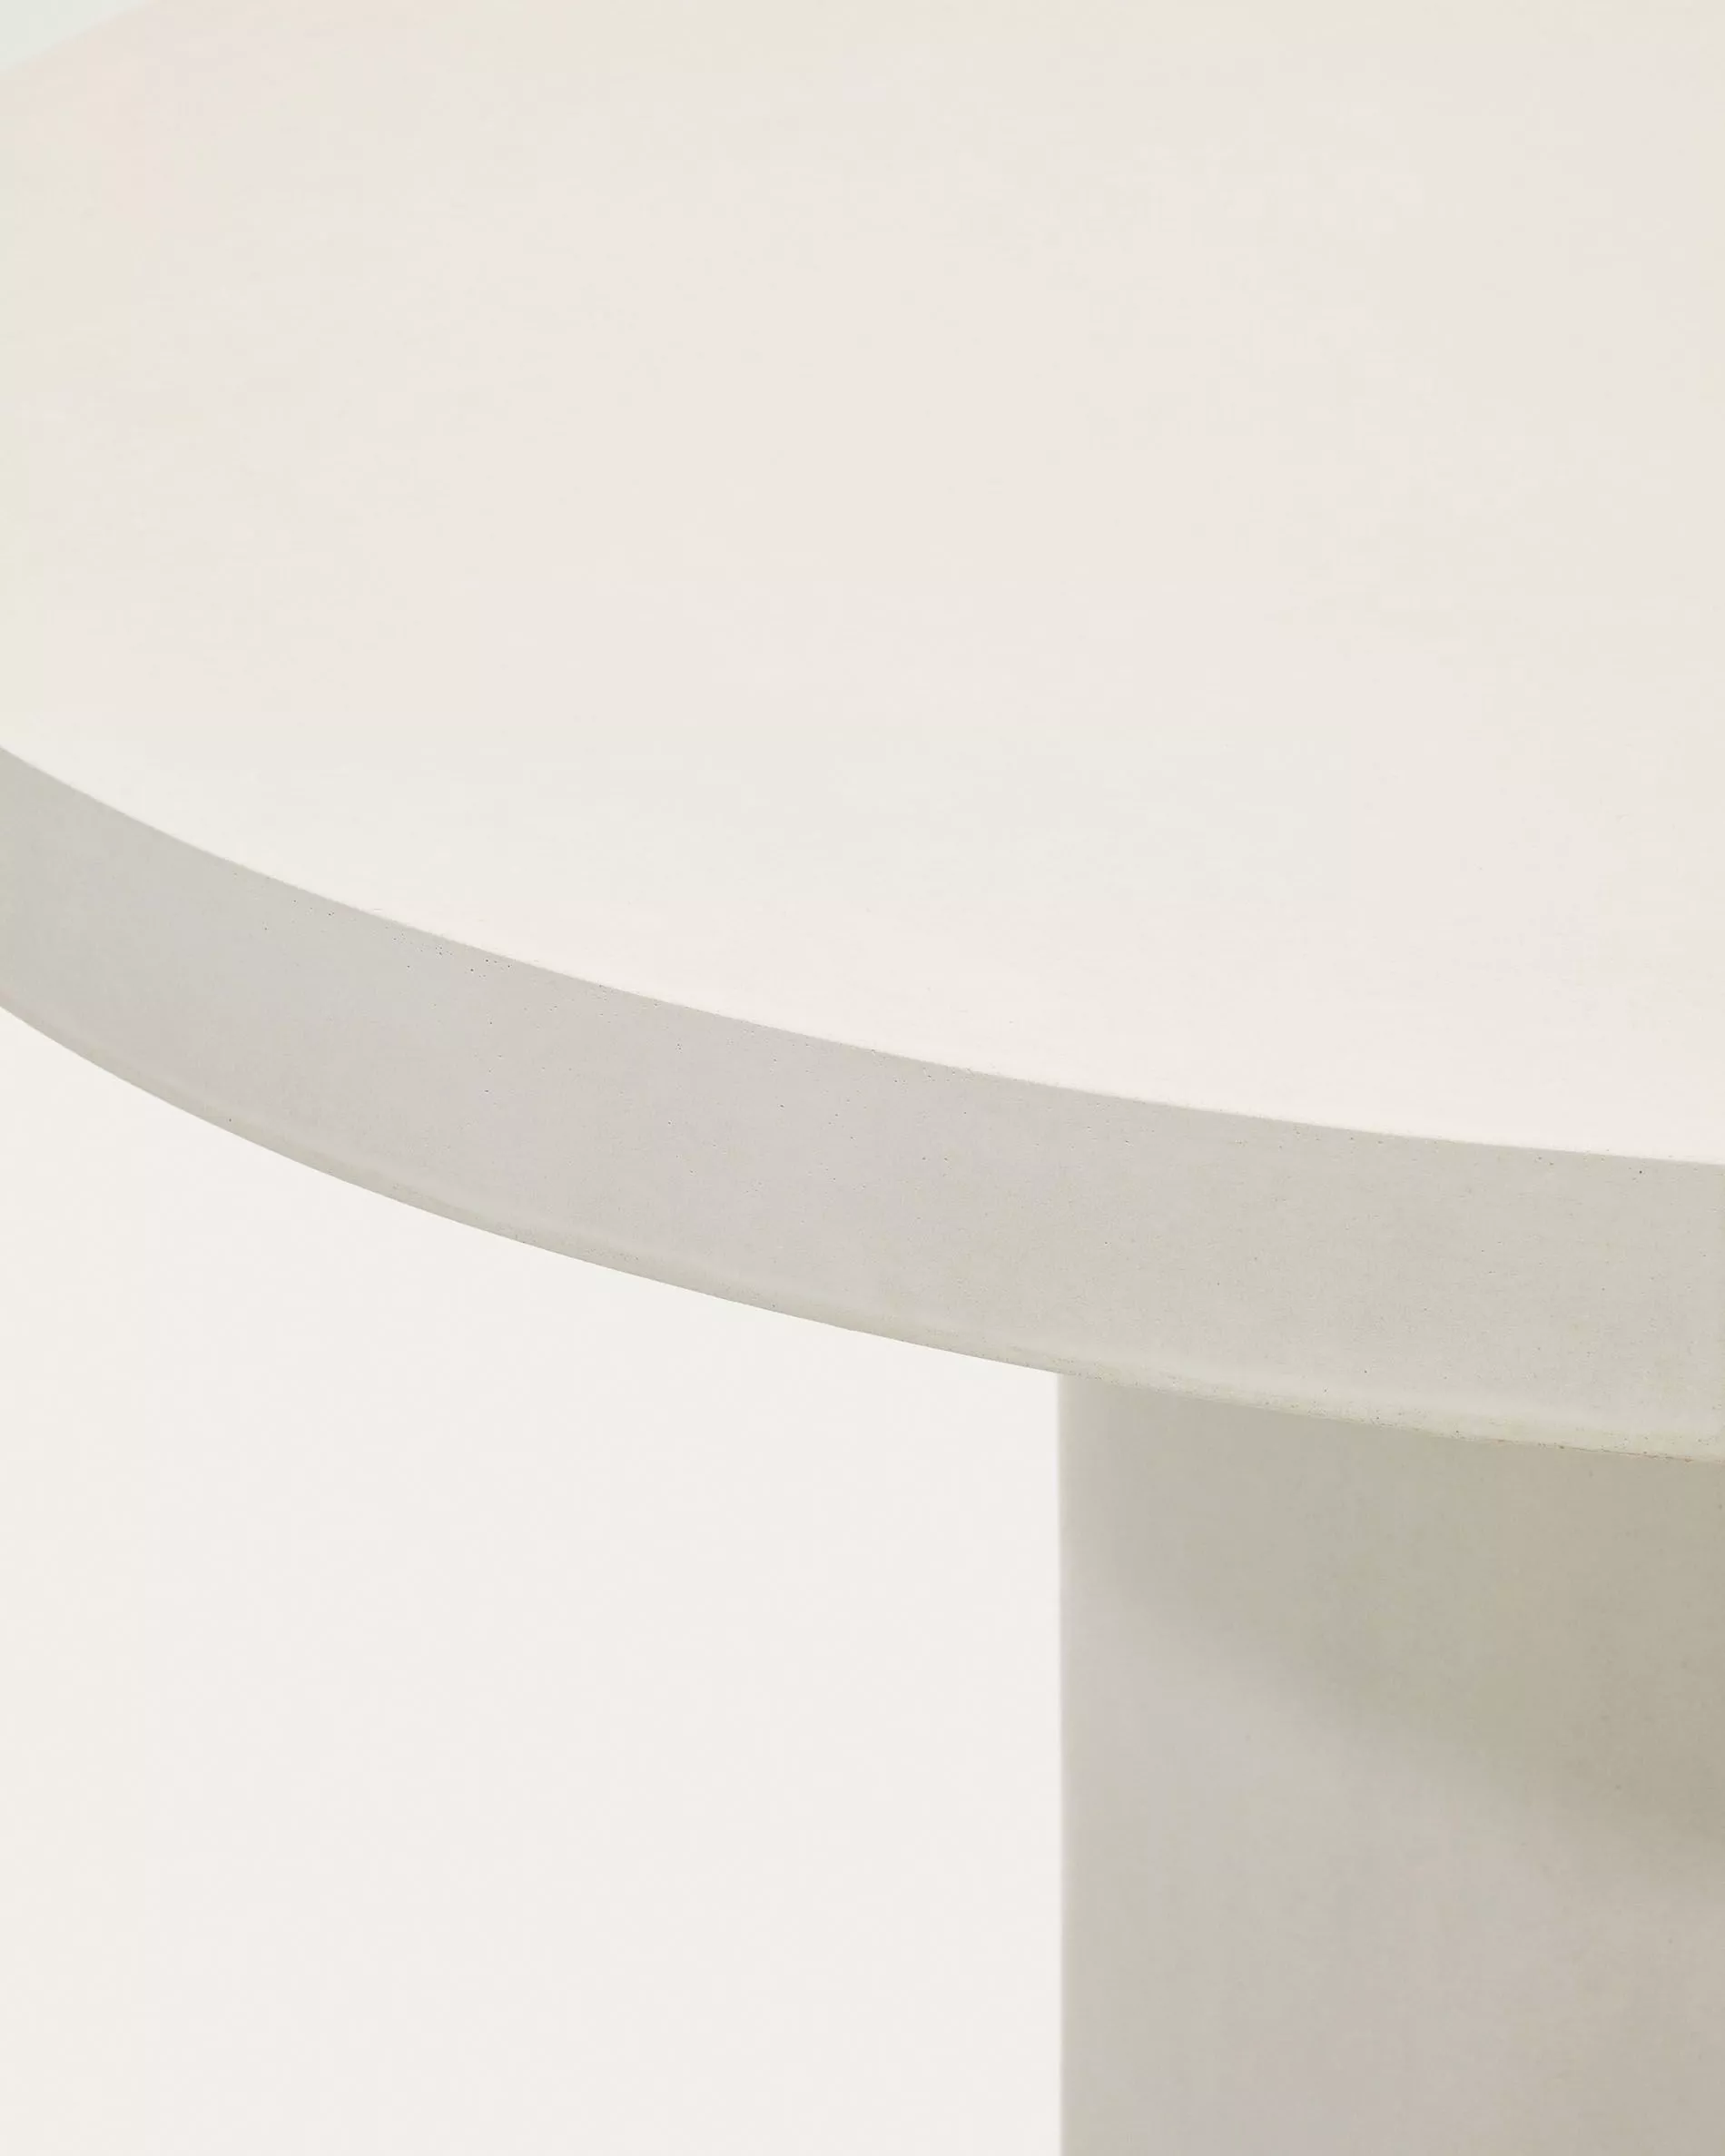 Круглый стол La Forma Aiguablava из белого цемента 120 см